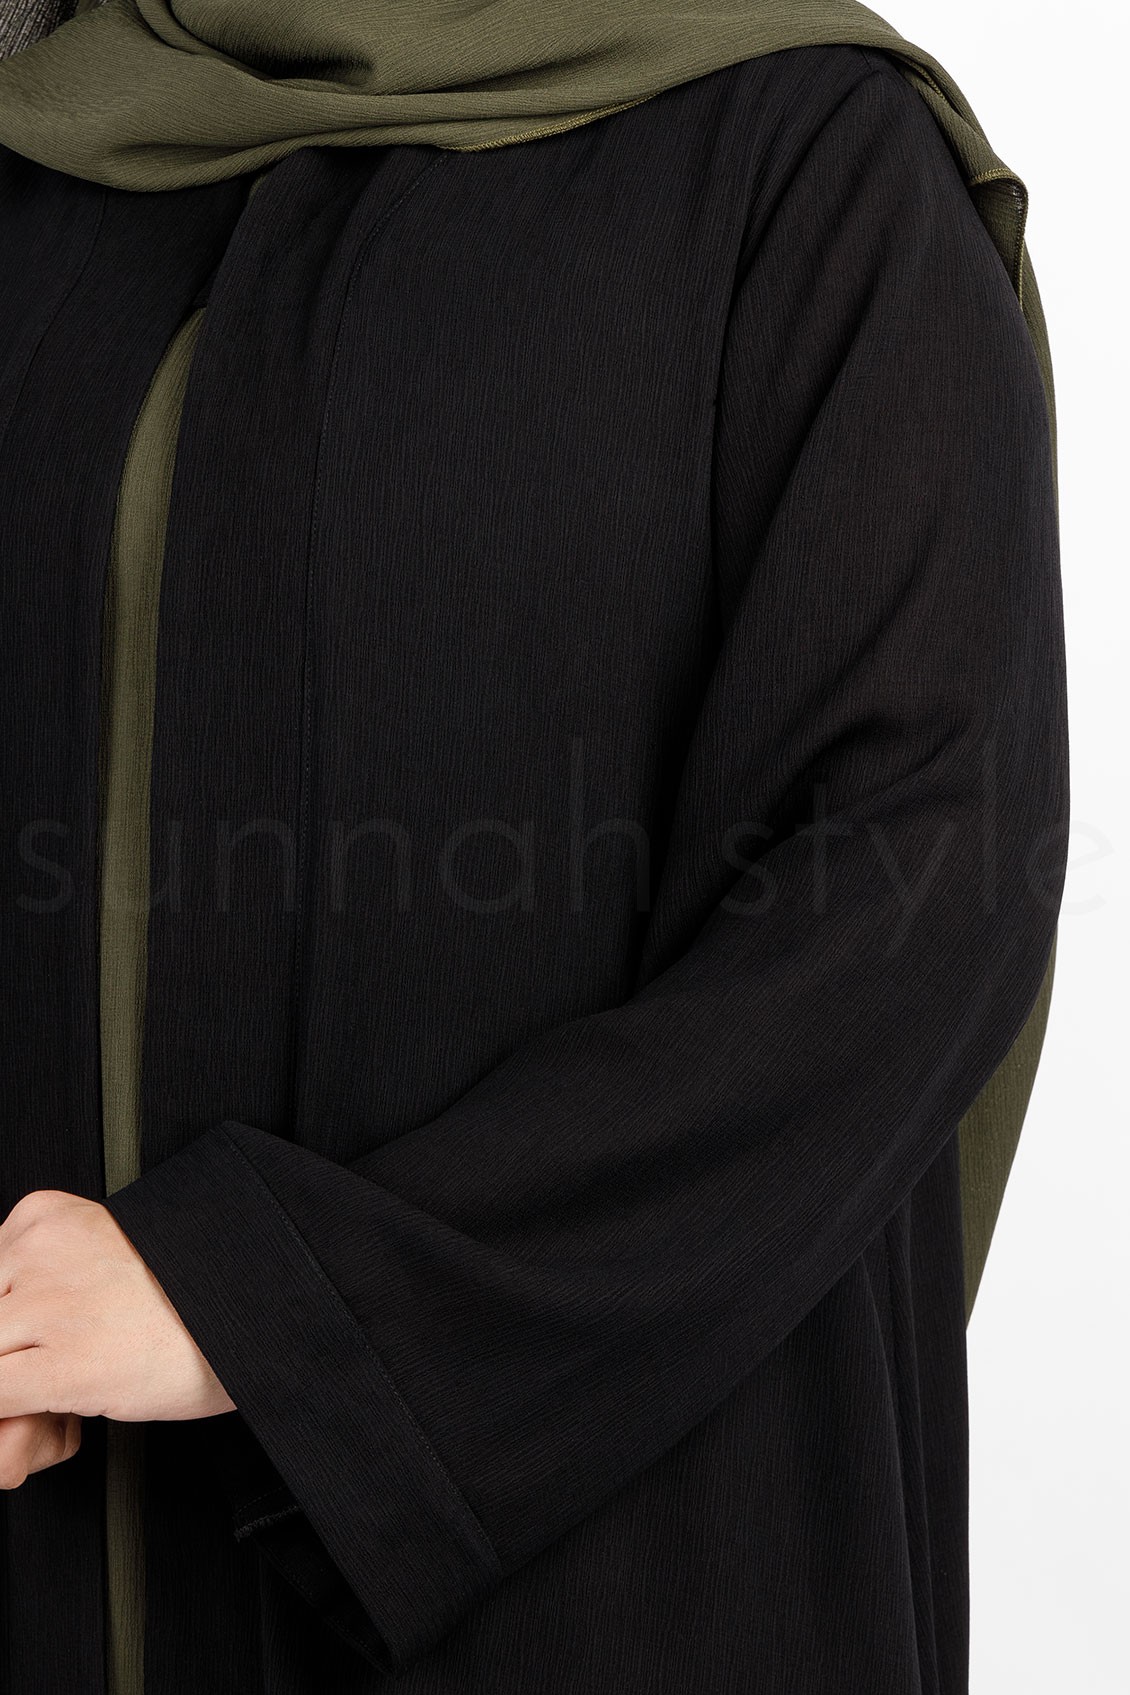 Sunnah Style Brushed Robe Black